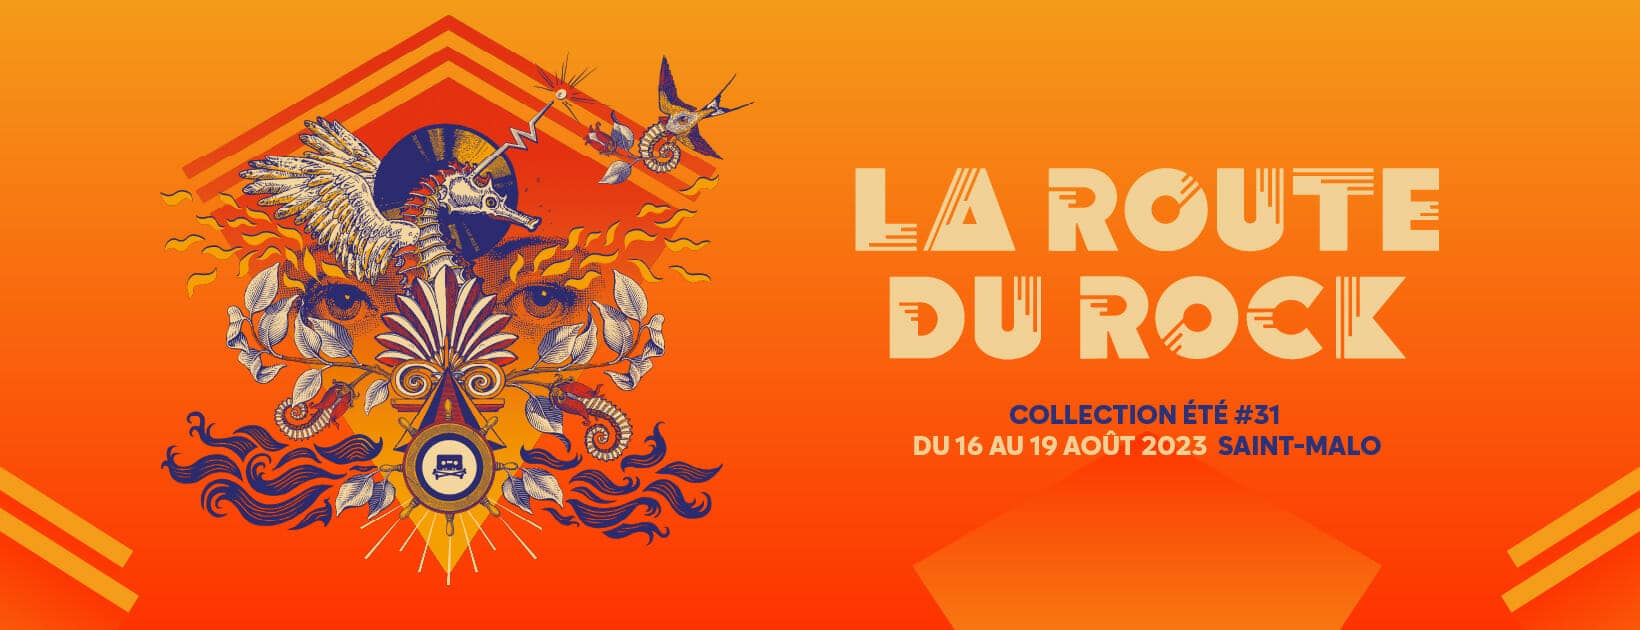 La Route du Rock, 16 au 19 août 2023 à Saint-Malo (35)